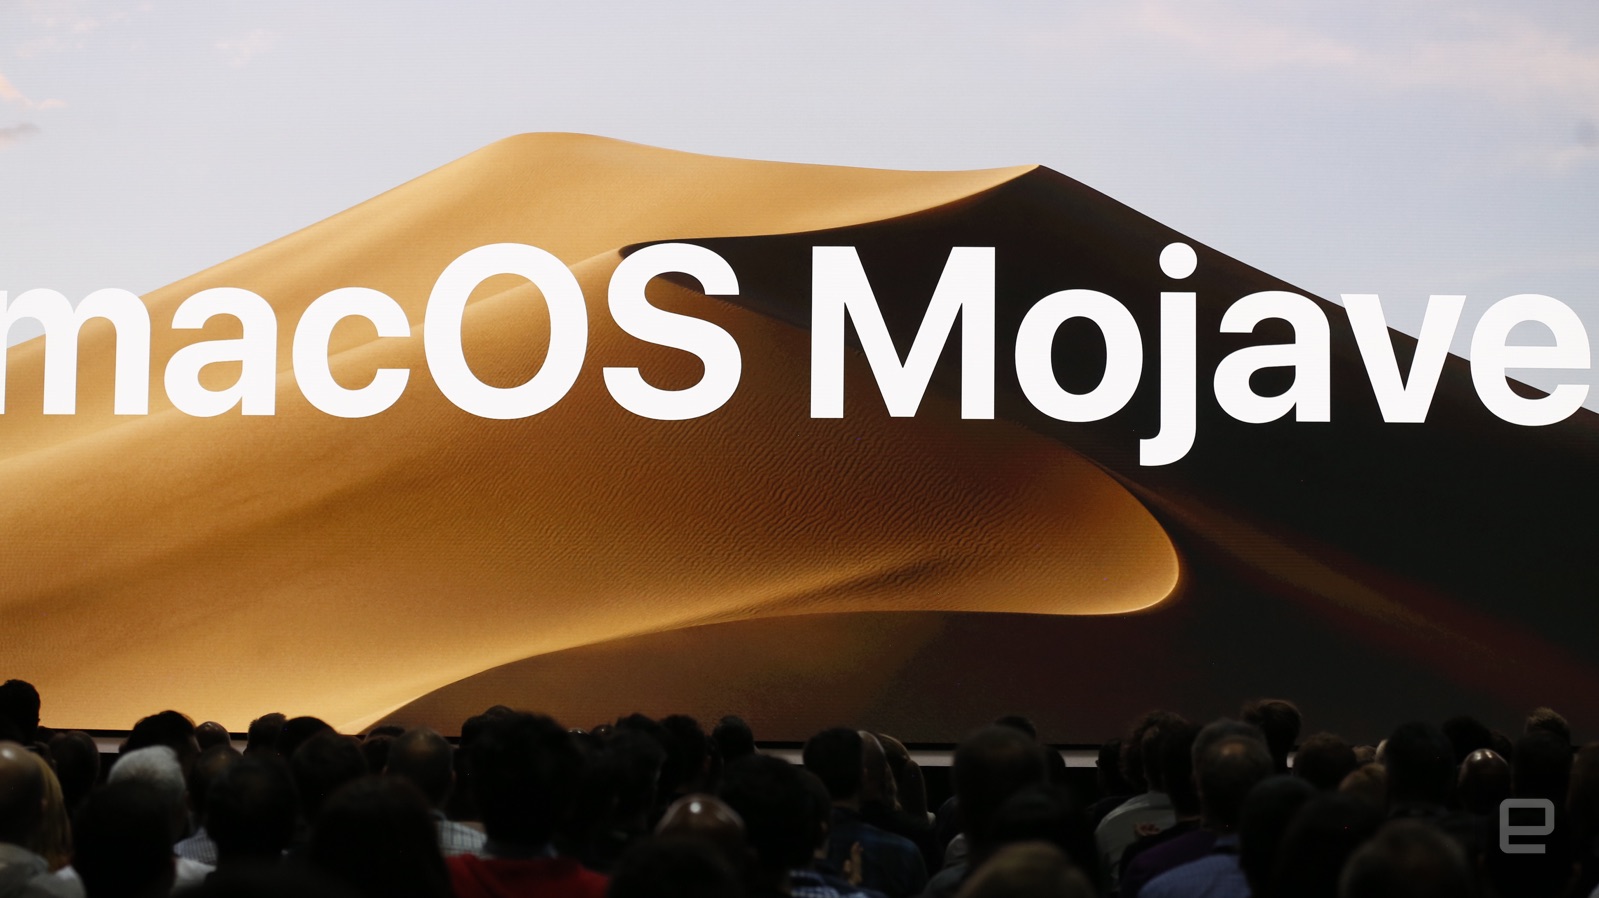 [WWDC 2018] Apple chính thức ra mắt macOS Mojave với nhiều tính năng mới, chú trọng nâng cấp bảo mật và thay đổi hoàn toàn giao diện của Mac App Store